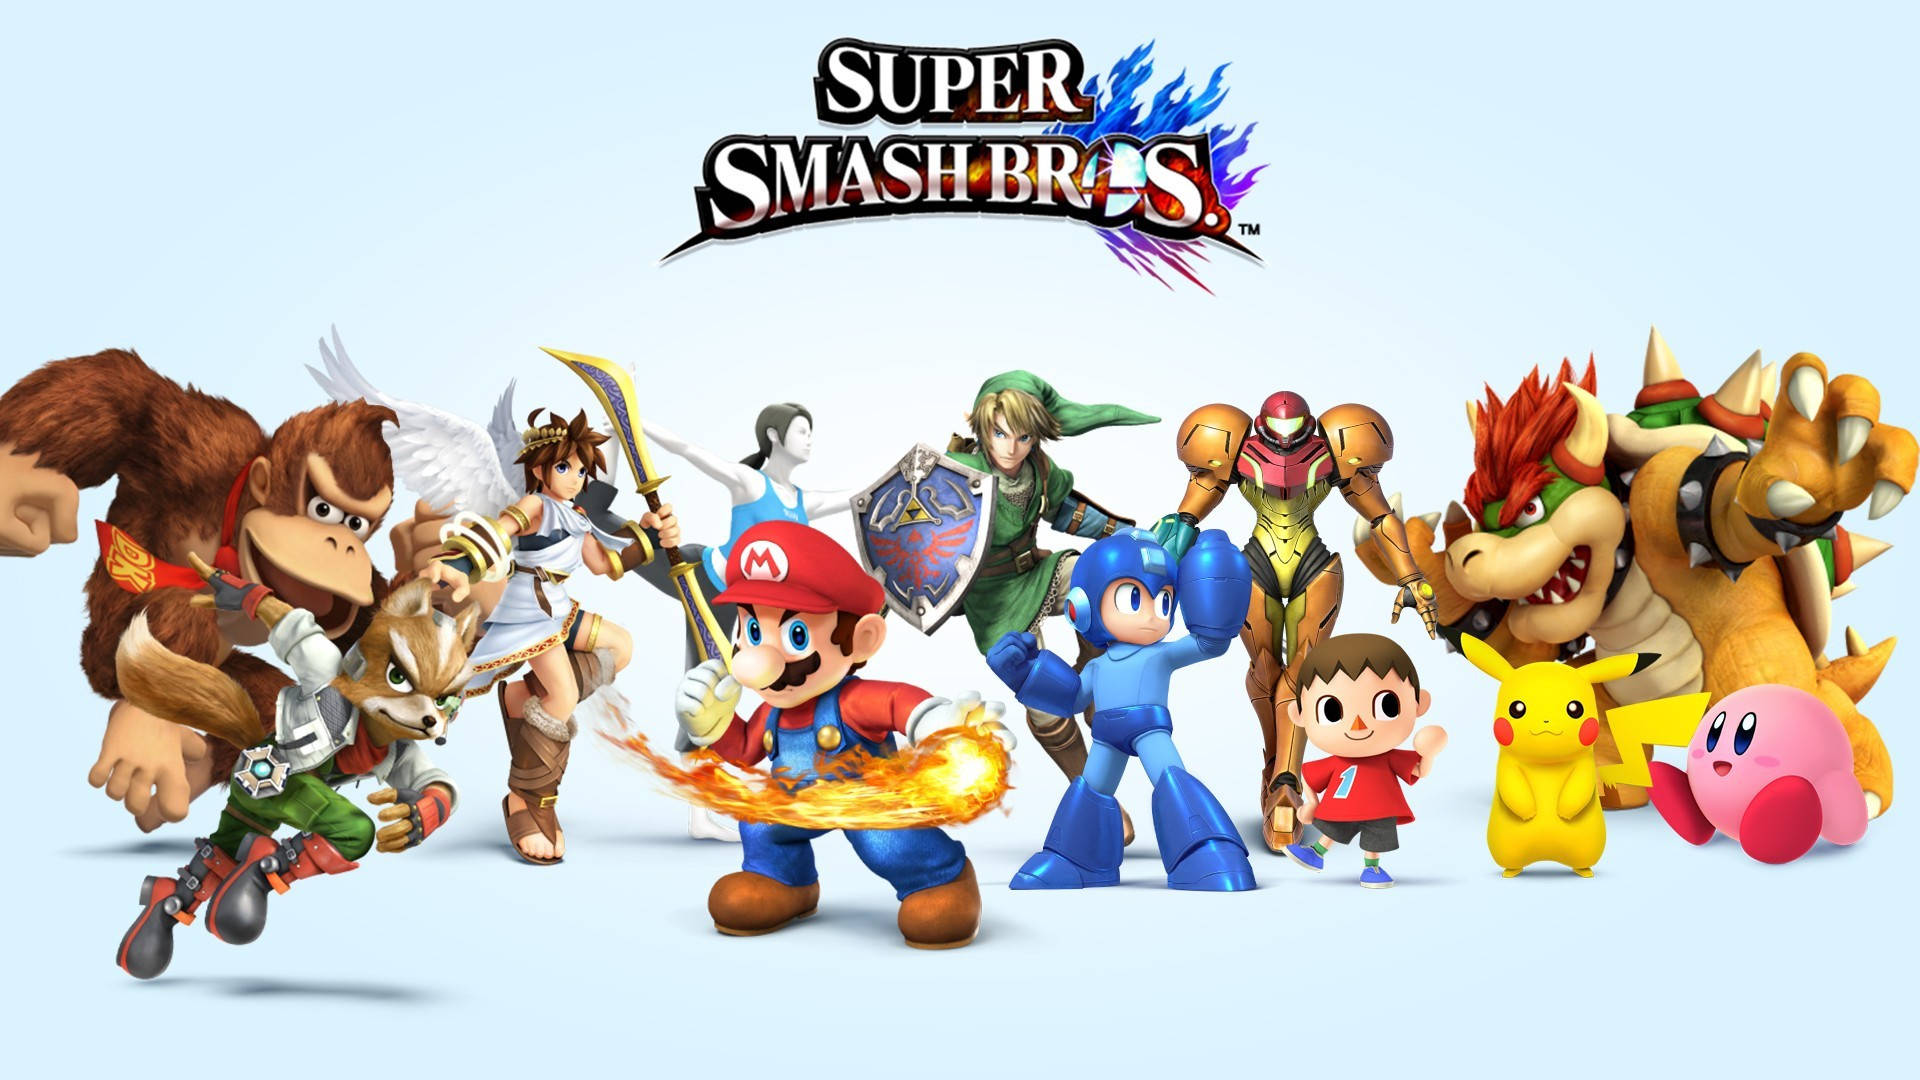 Cool-colored Super Smash Bros